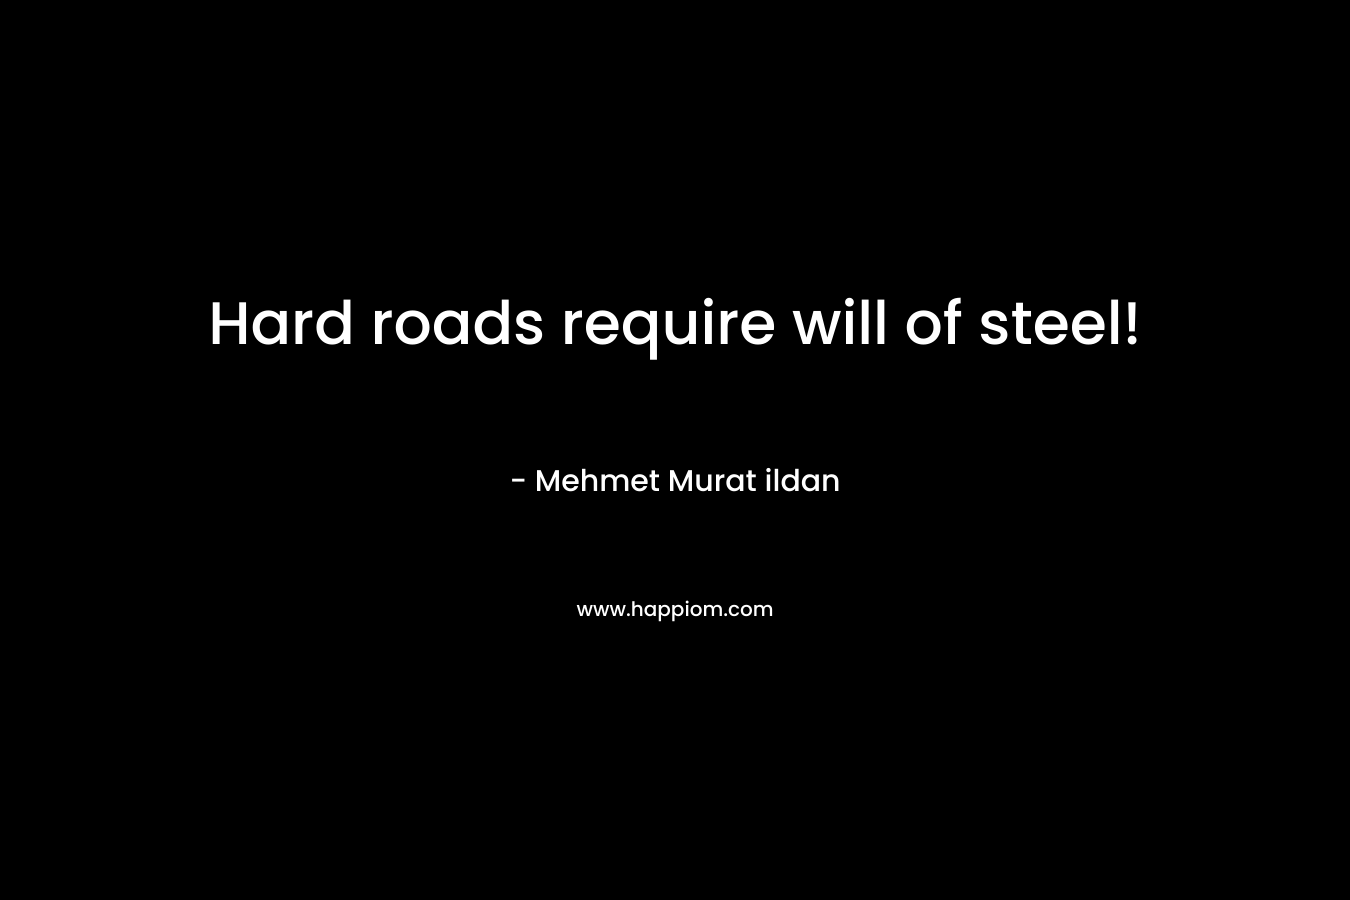 Hard roads require will of steel! – Mehmet Murat ildan